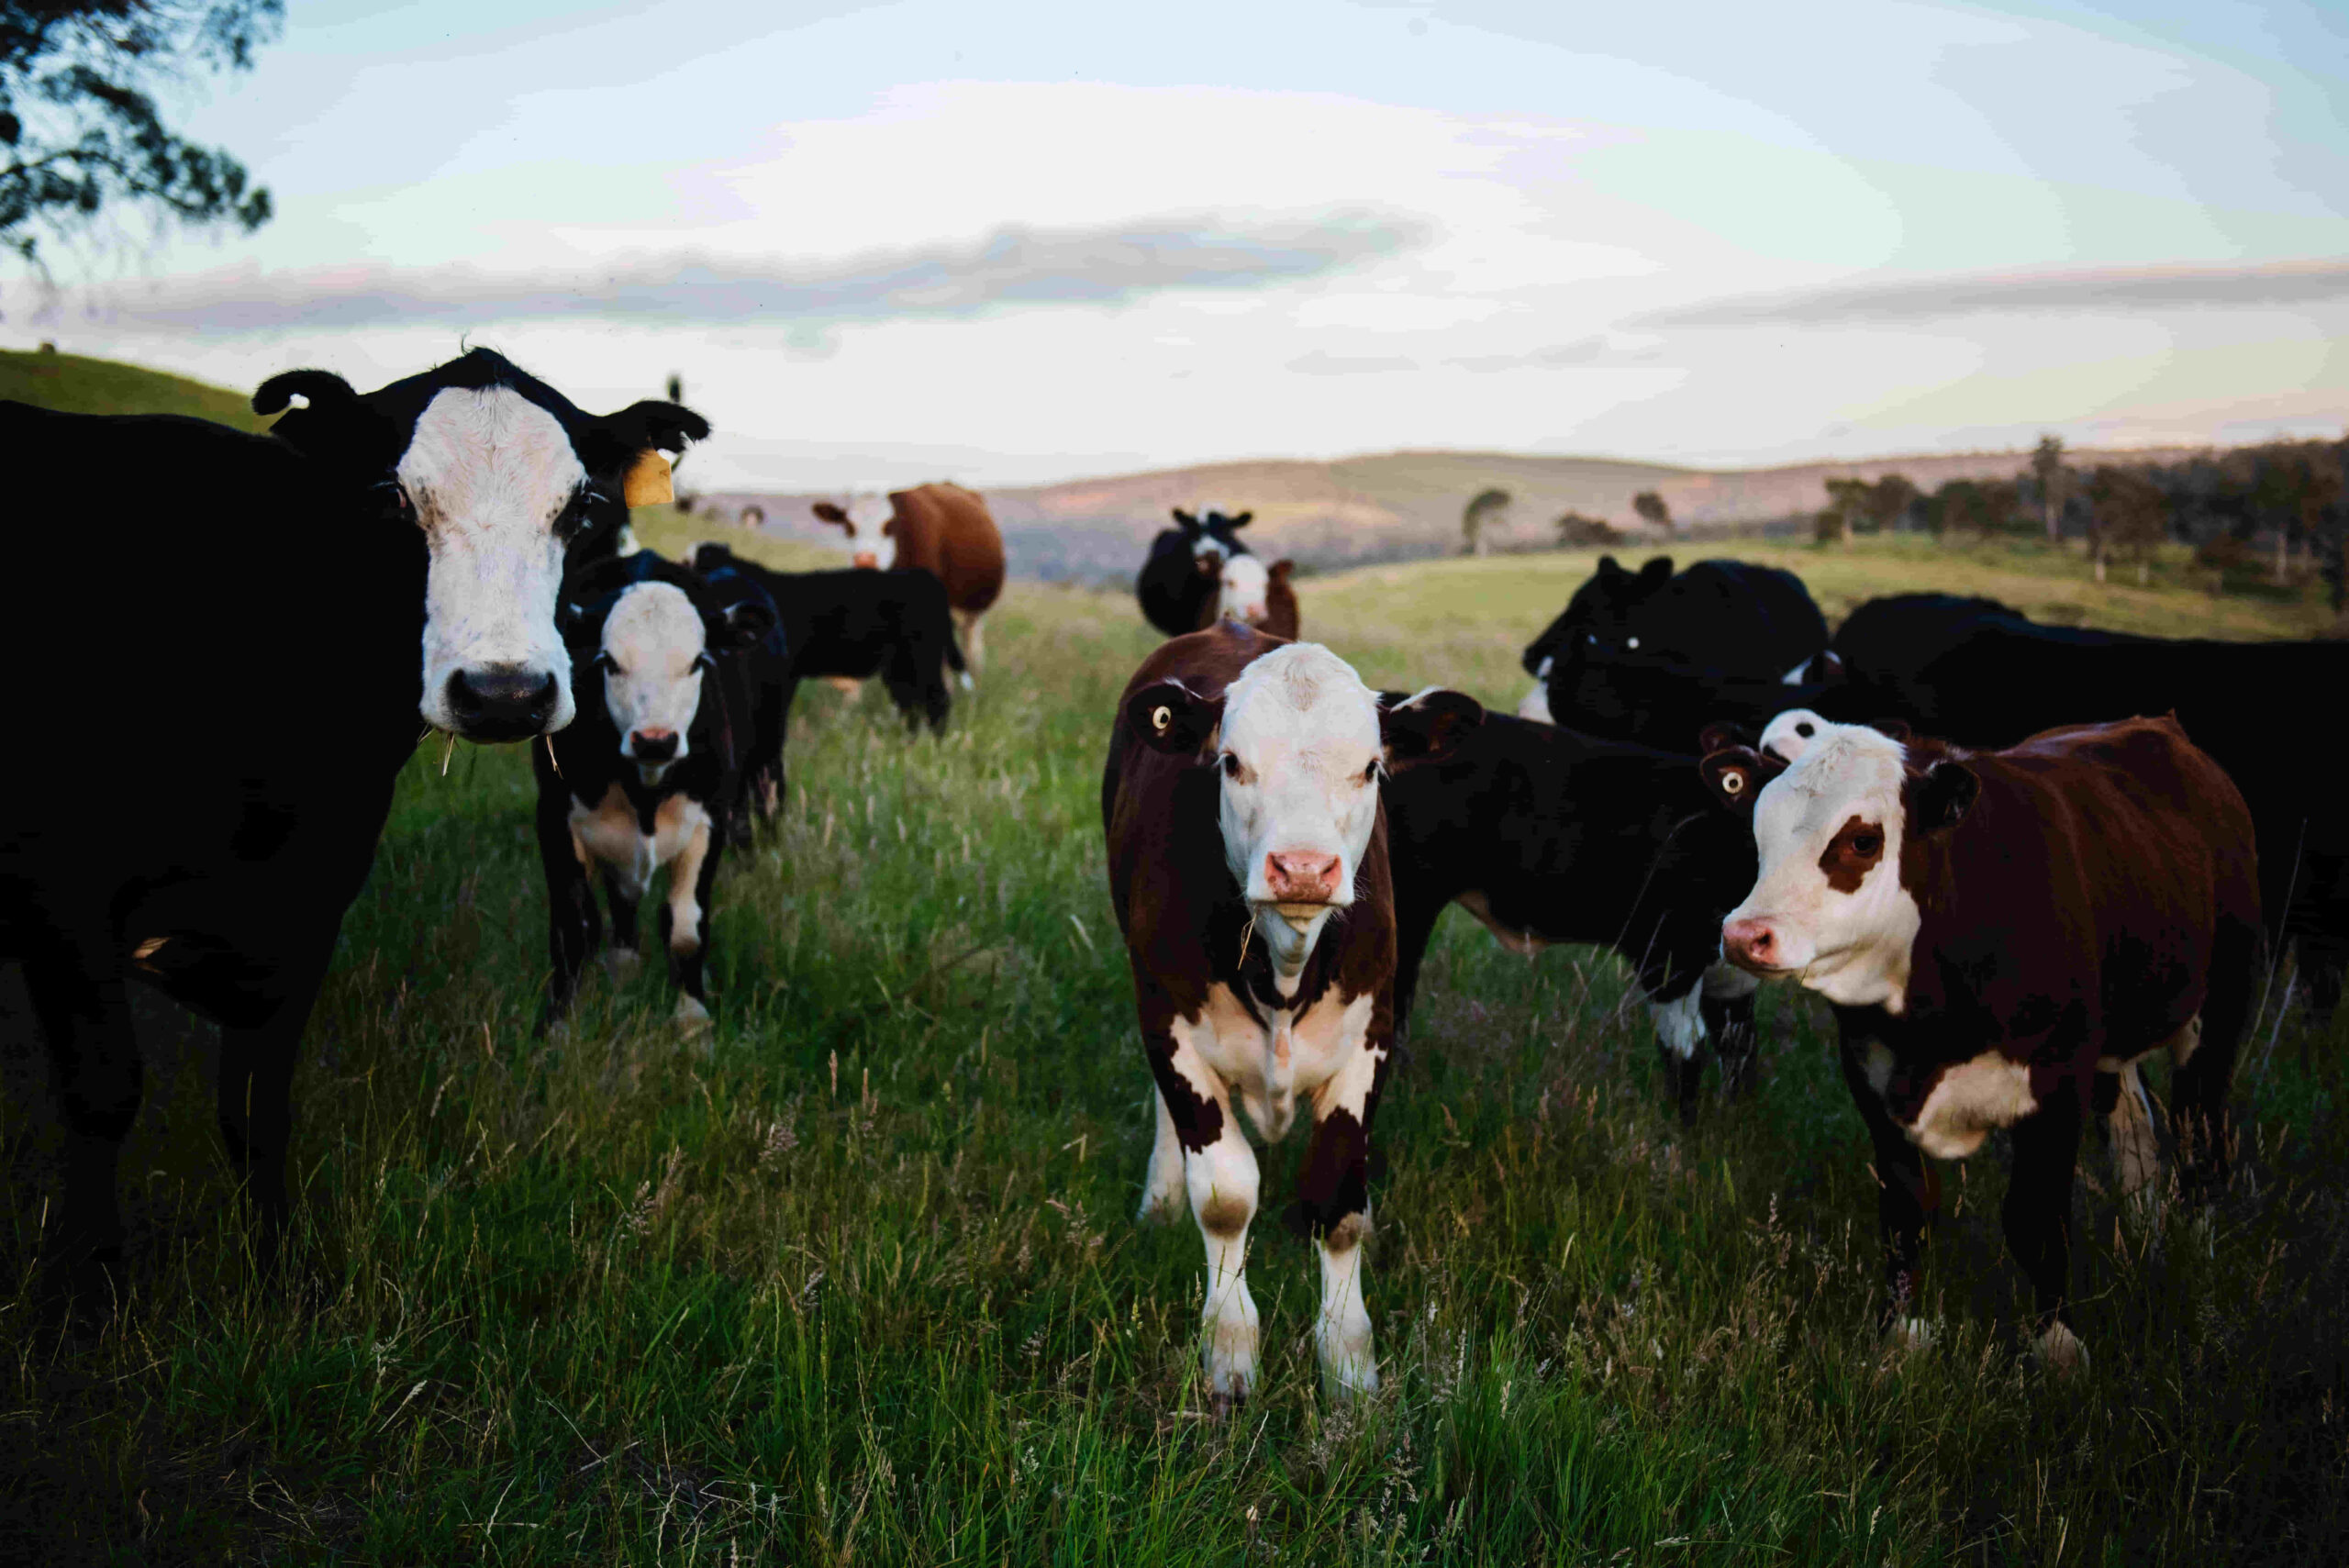 características del los bovinos de bueyes o buey y las vacas